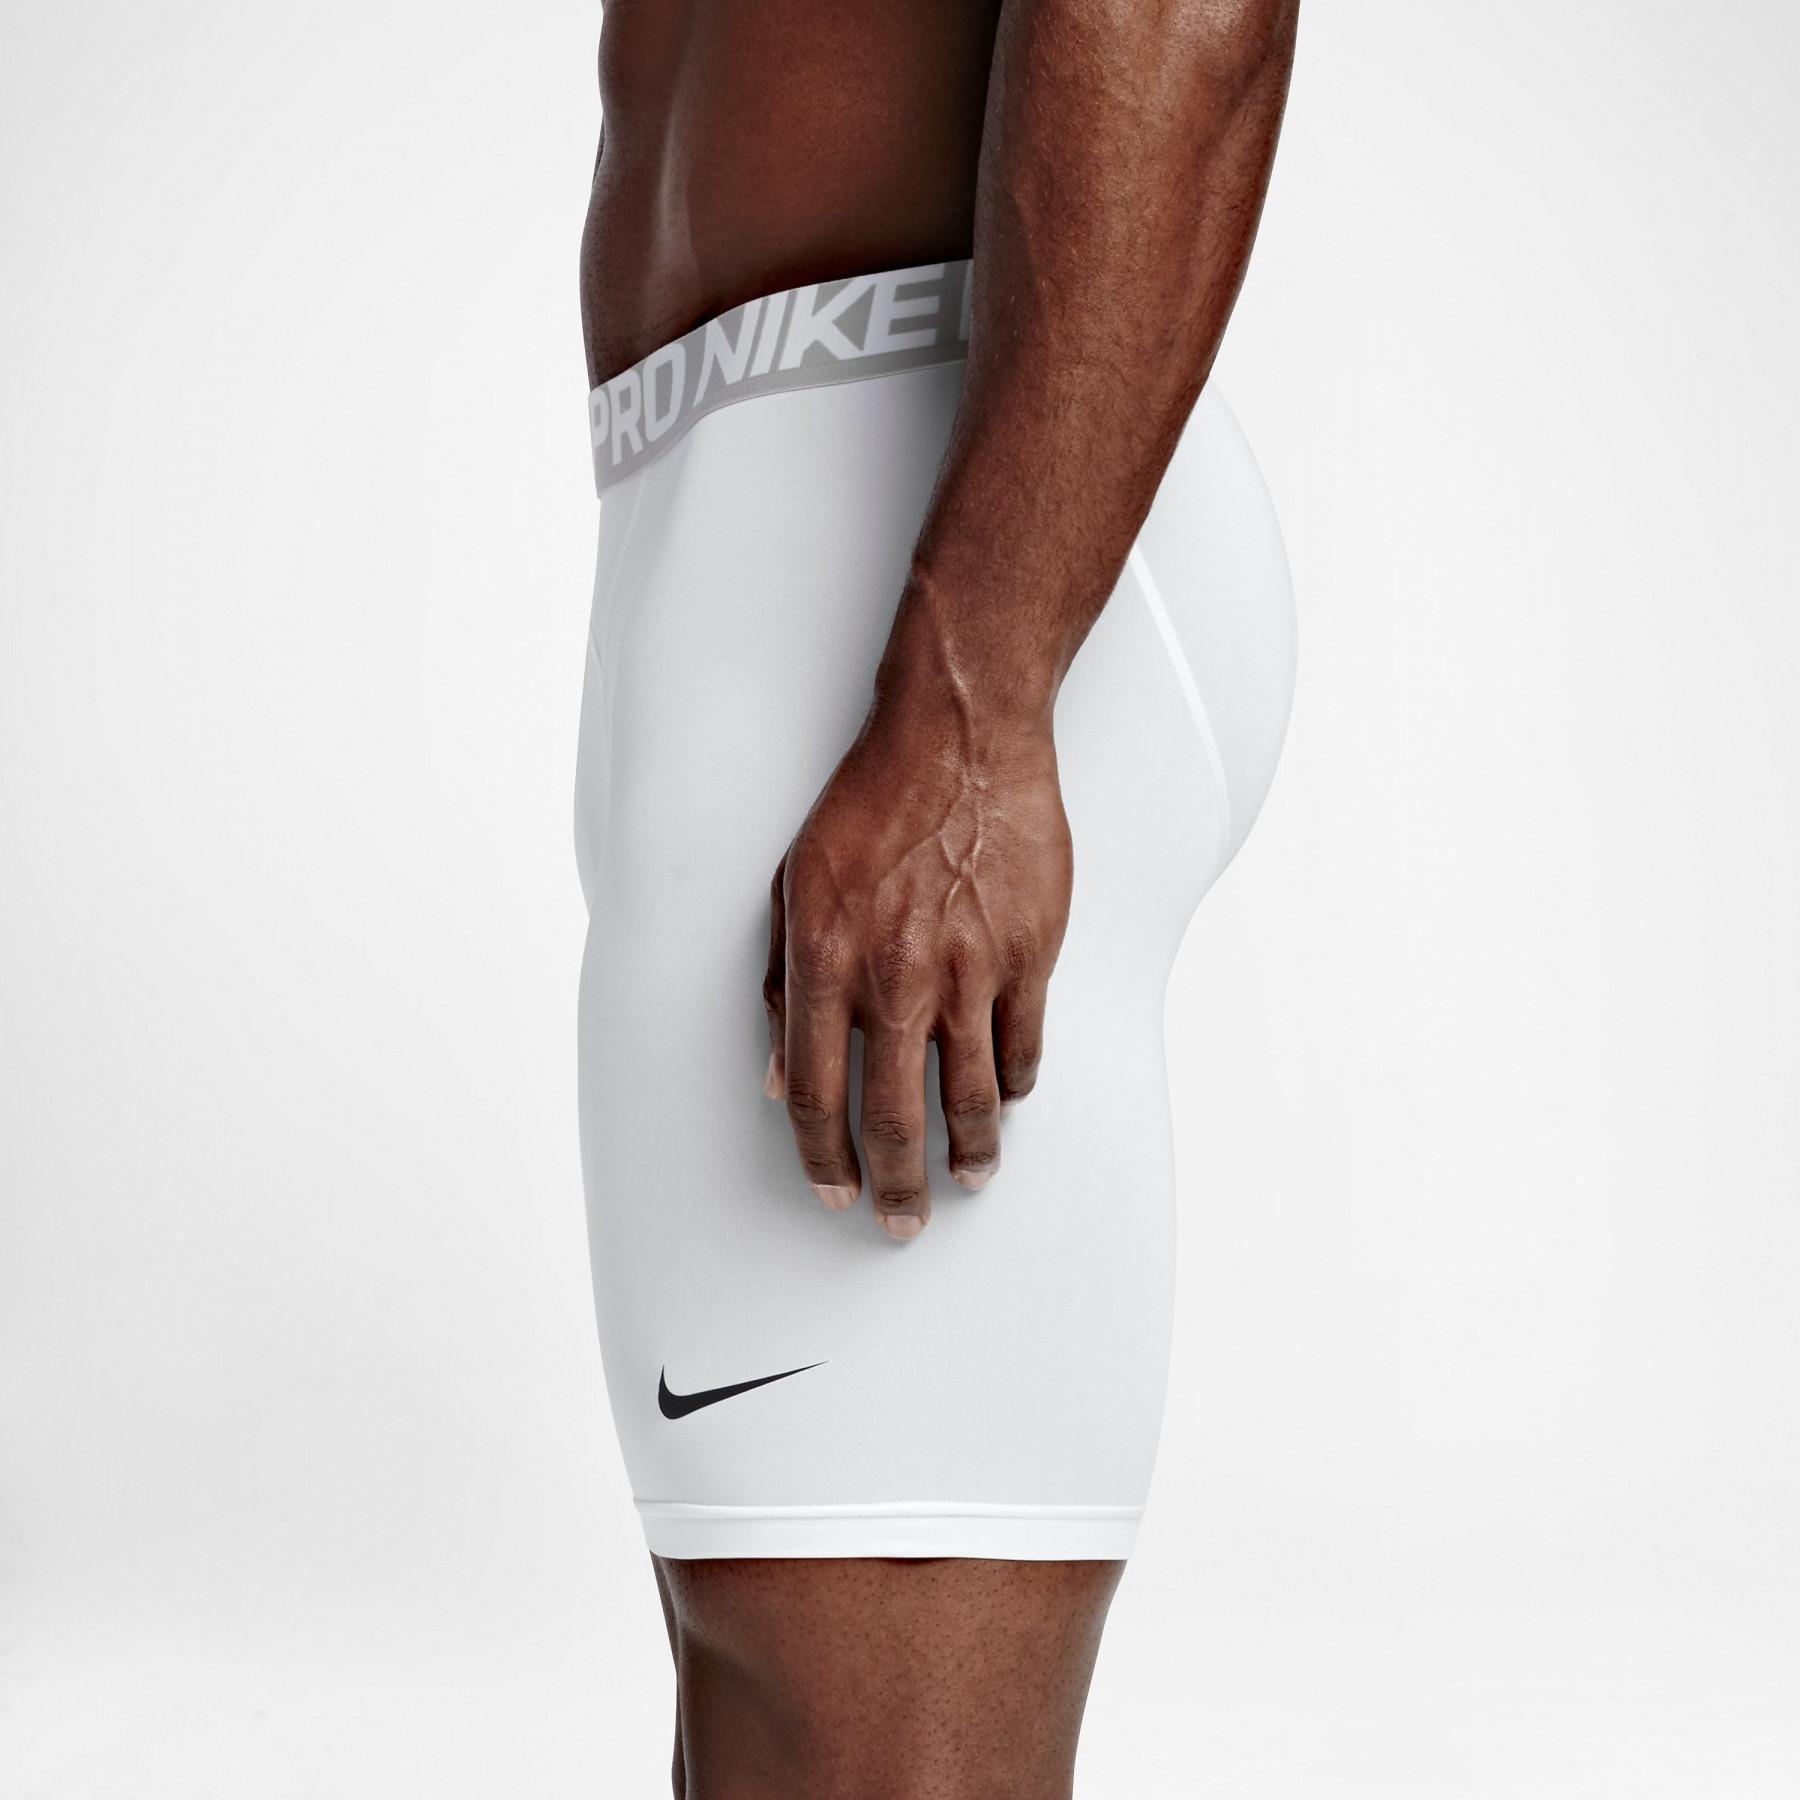 Calções de compressão Nike Pro